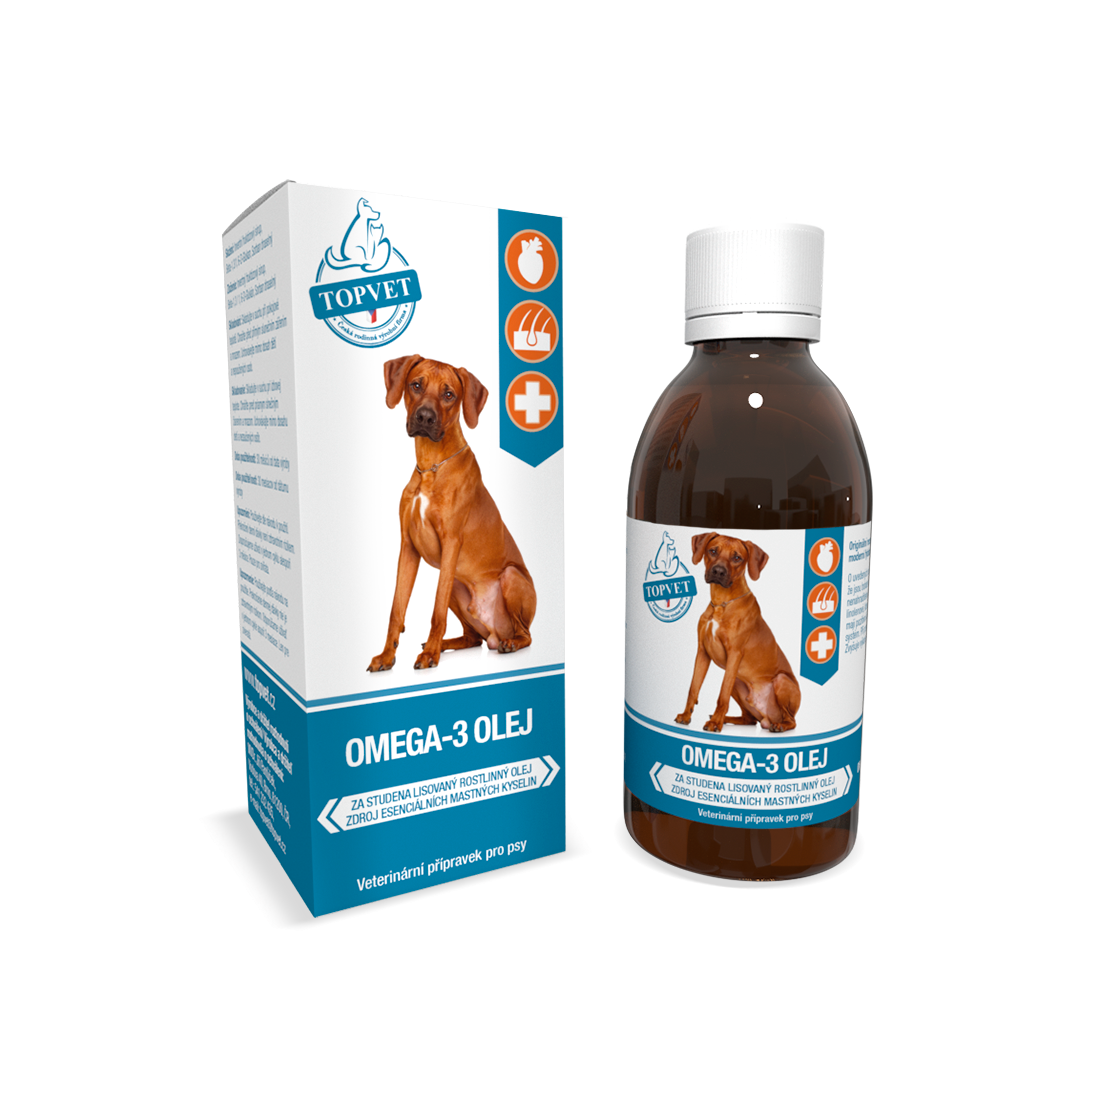 Omega-3 Oil for dogs